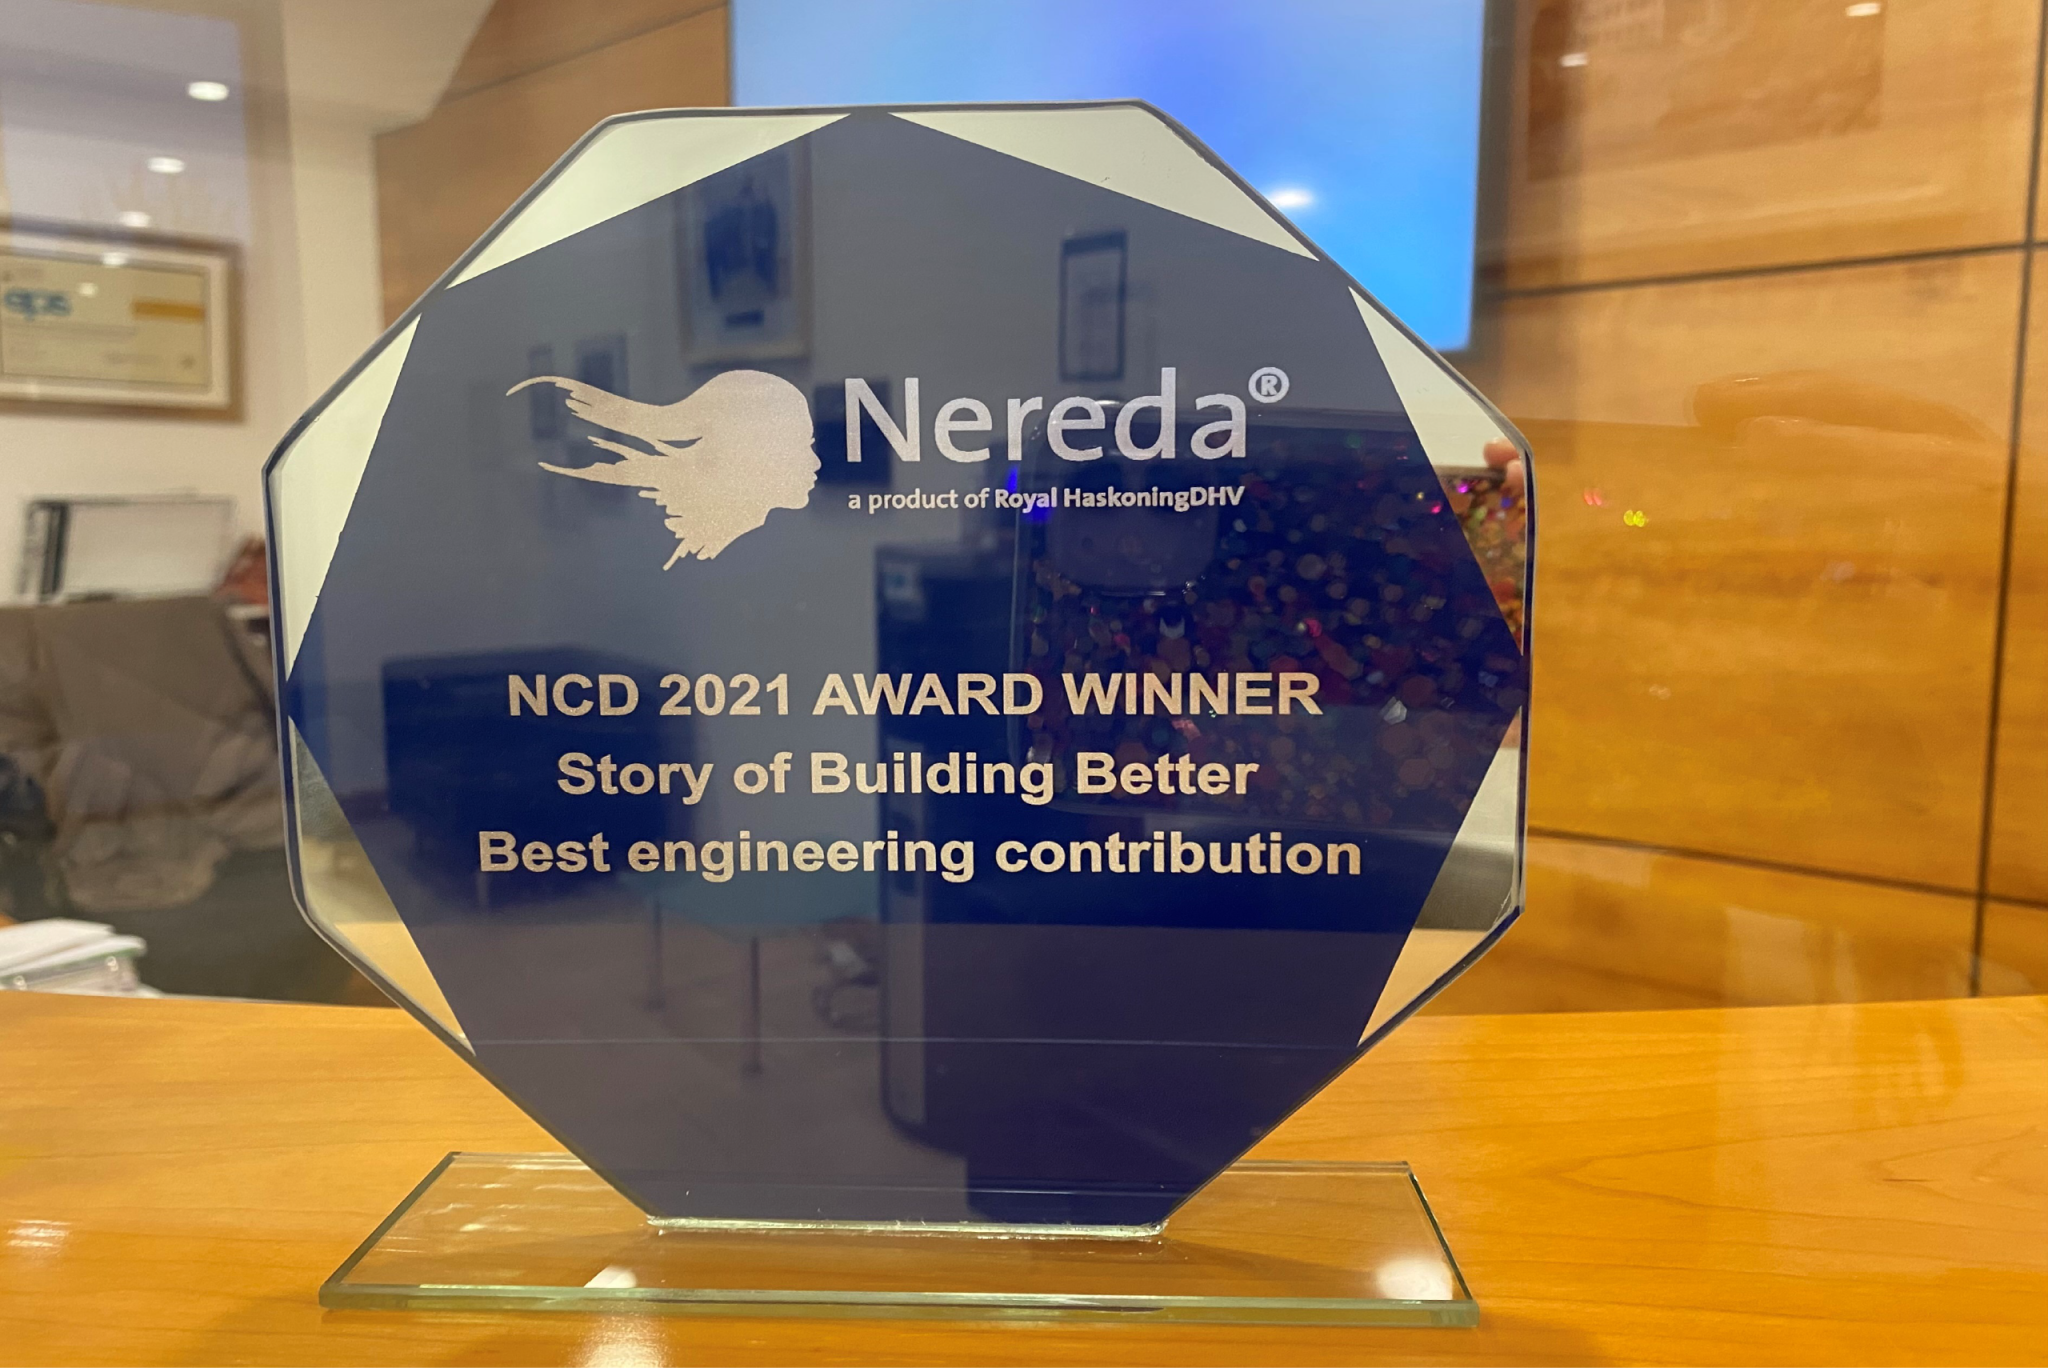 EPS awarded Best Engineering Contribution at Nereda Community Days 2021